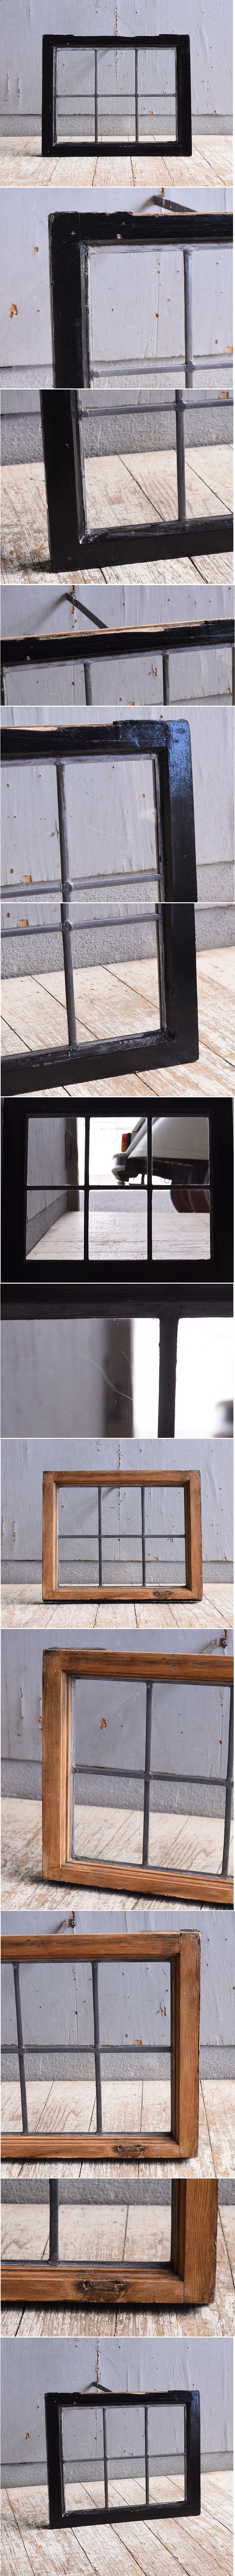 イギリス アンティーク 窓 無色透明 11032